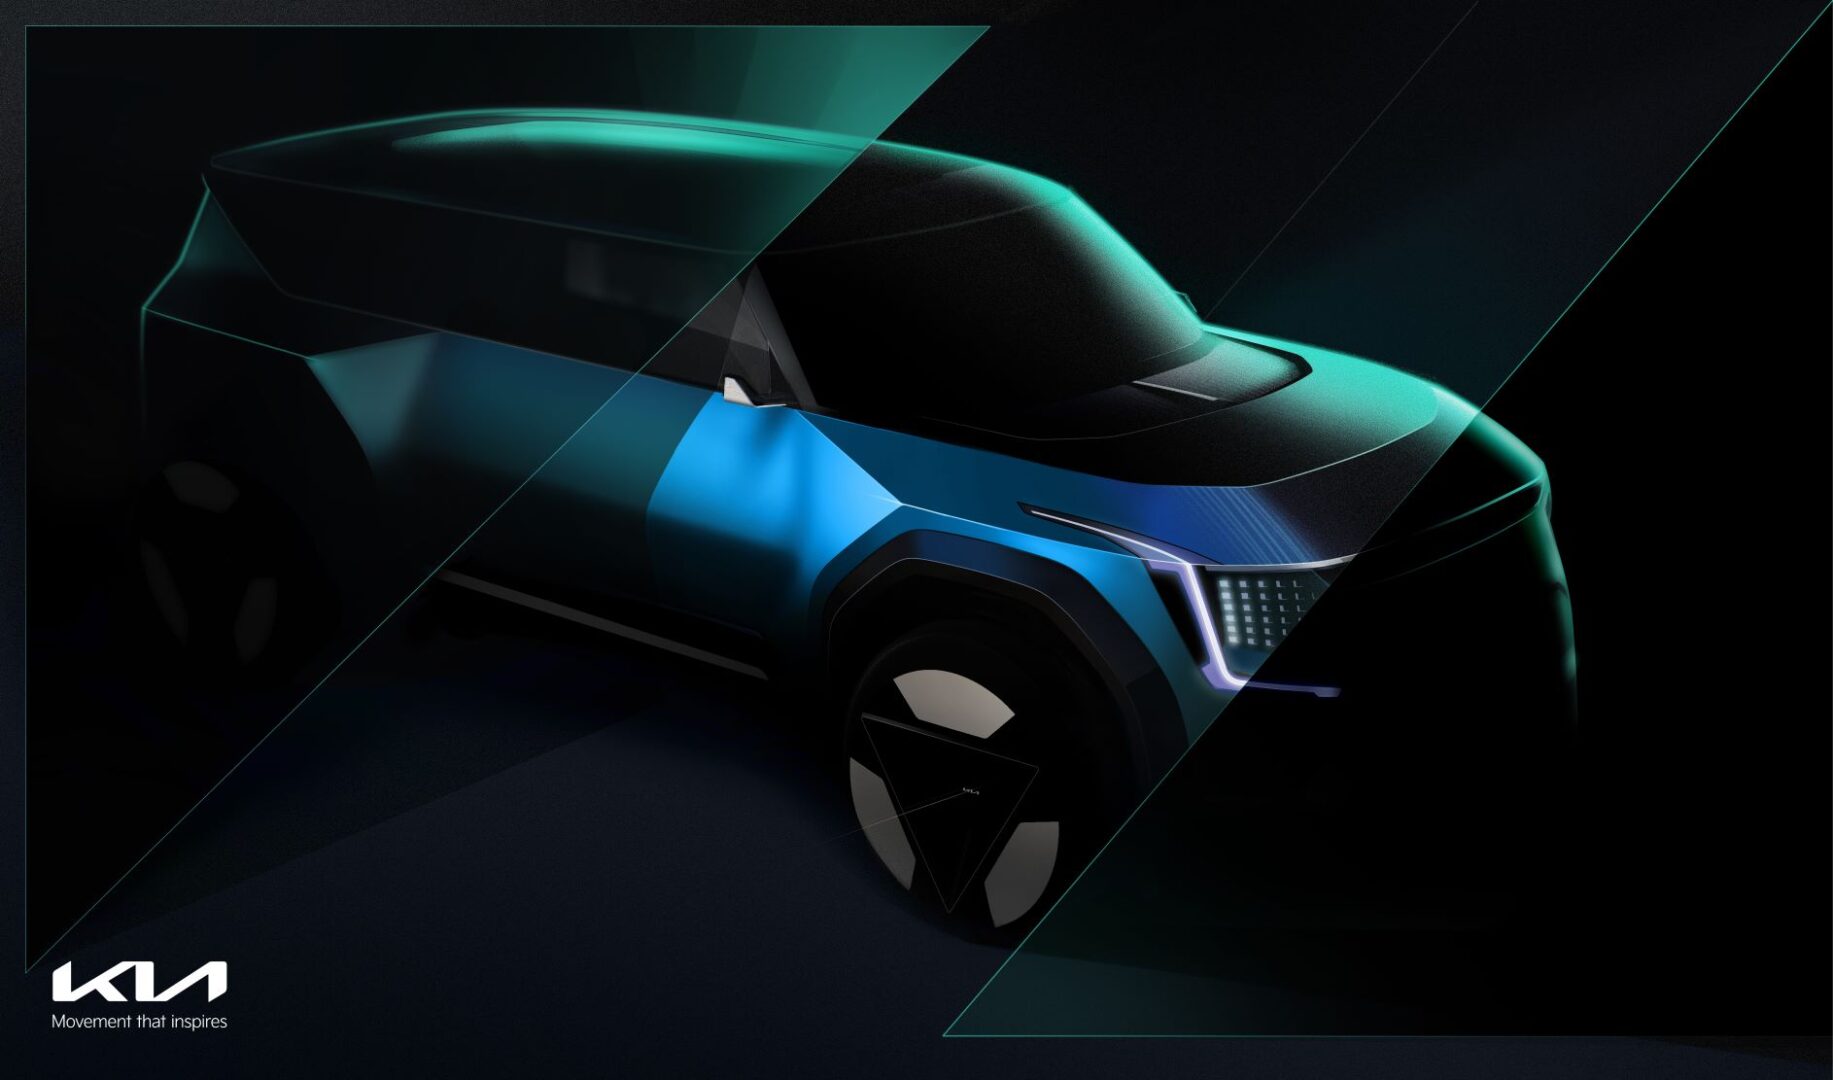 "كيا" تروّج لسيارتها الجديدة Concept EV9 التي تجسد رؤيتها كمزود لحلول التنقل المستدام 1